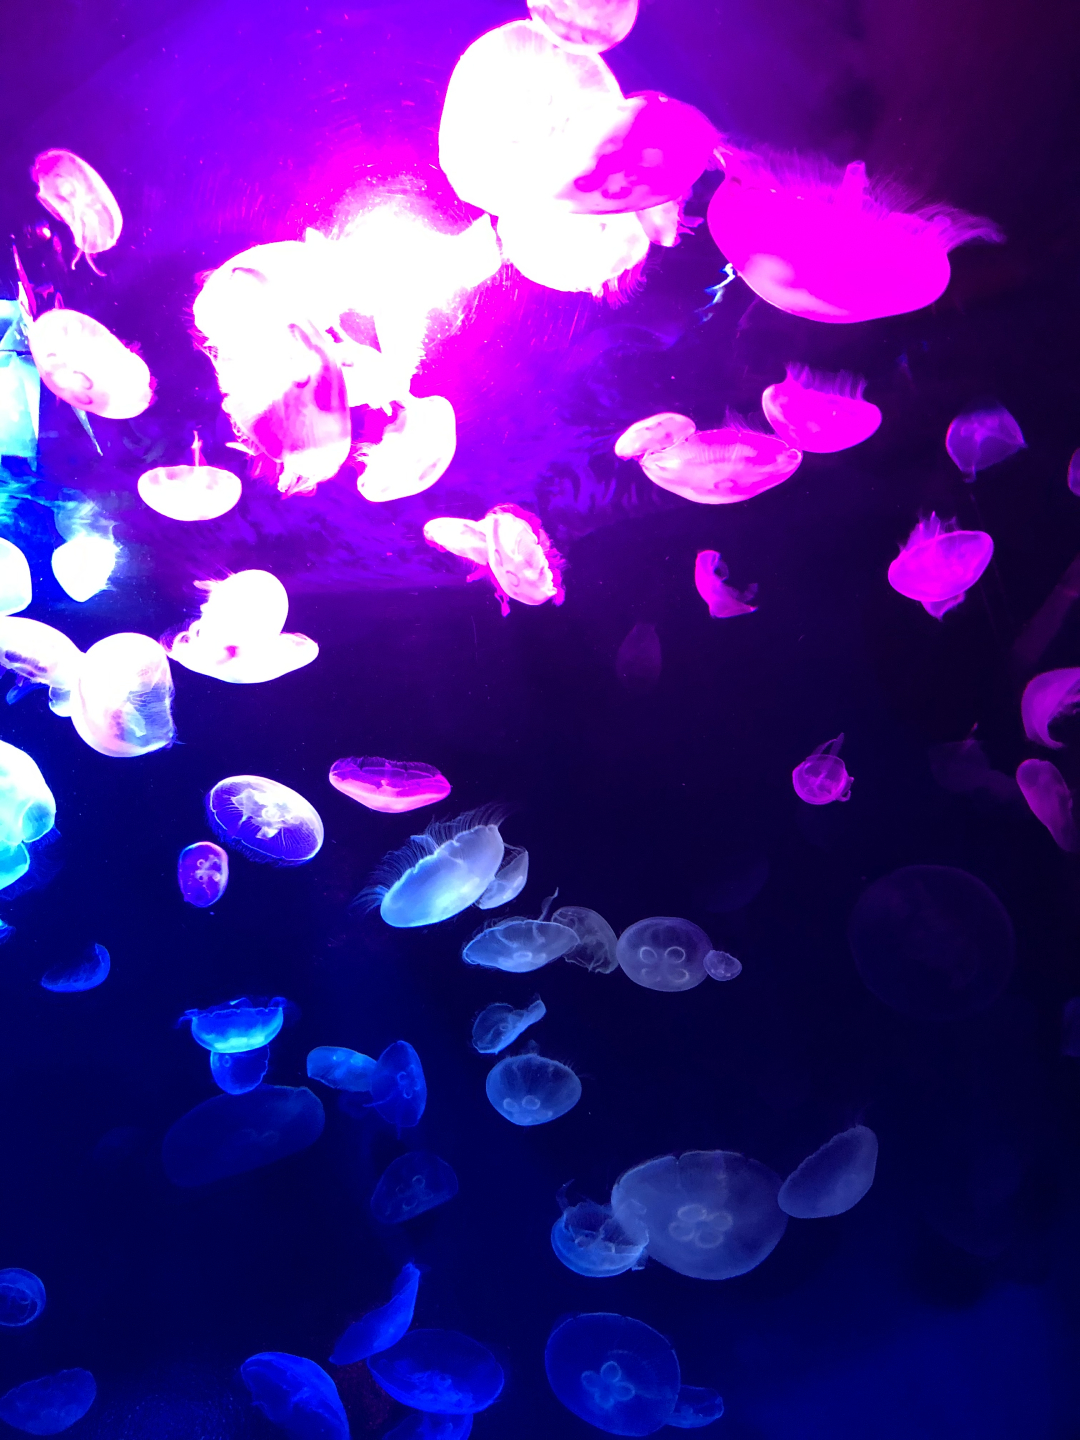 新エリア 海月空感 くらげくうかん がピンクに染まる 夜のサンシャイン水族館 もっと 性いっぱい展 開催中 レポ 詳細記事 Sgs109